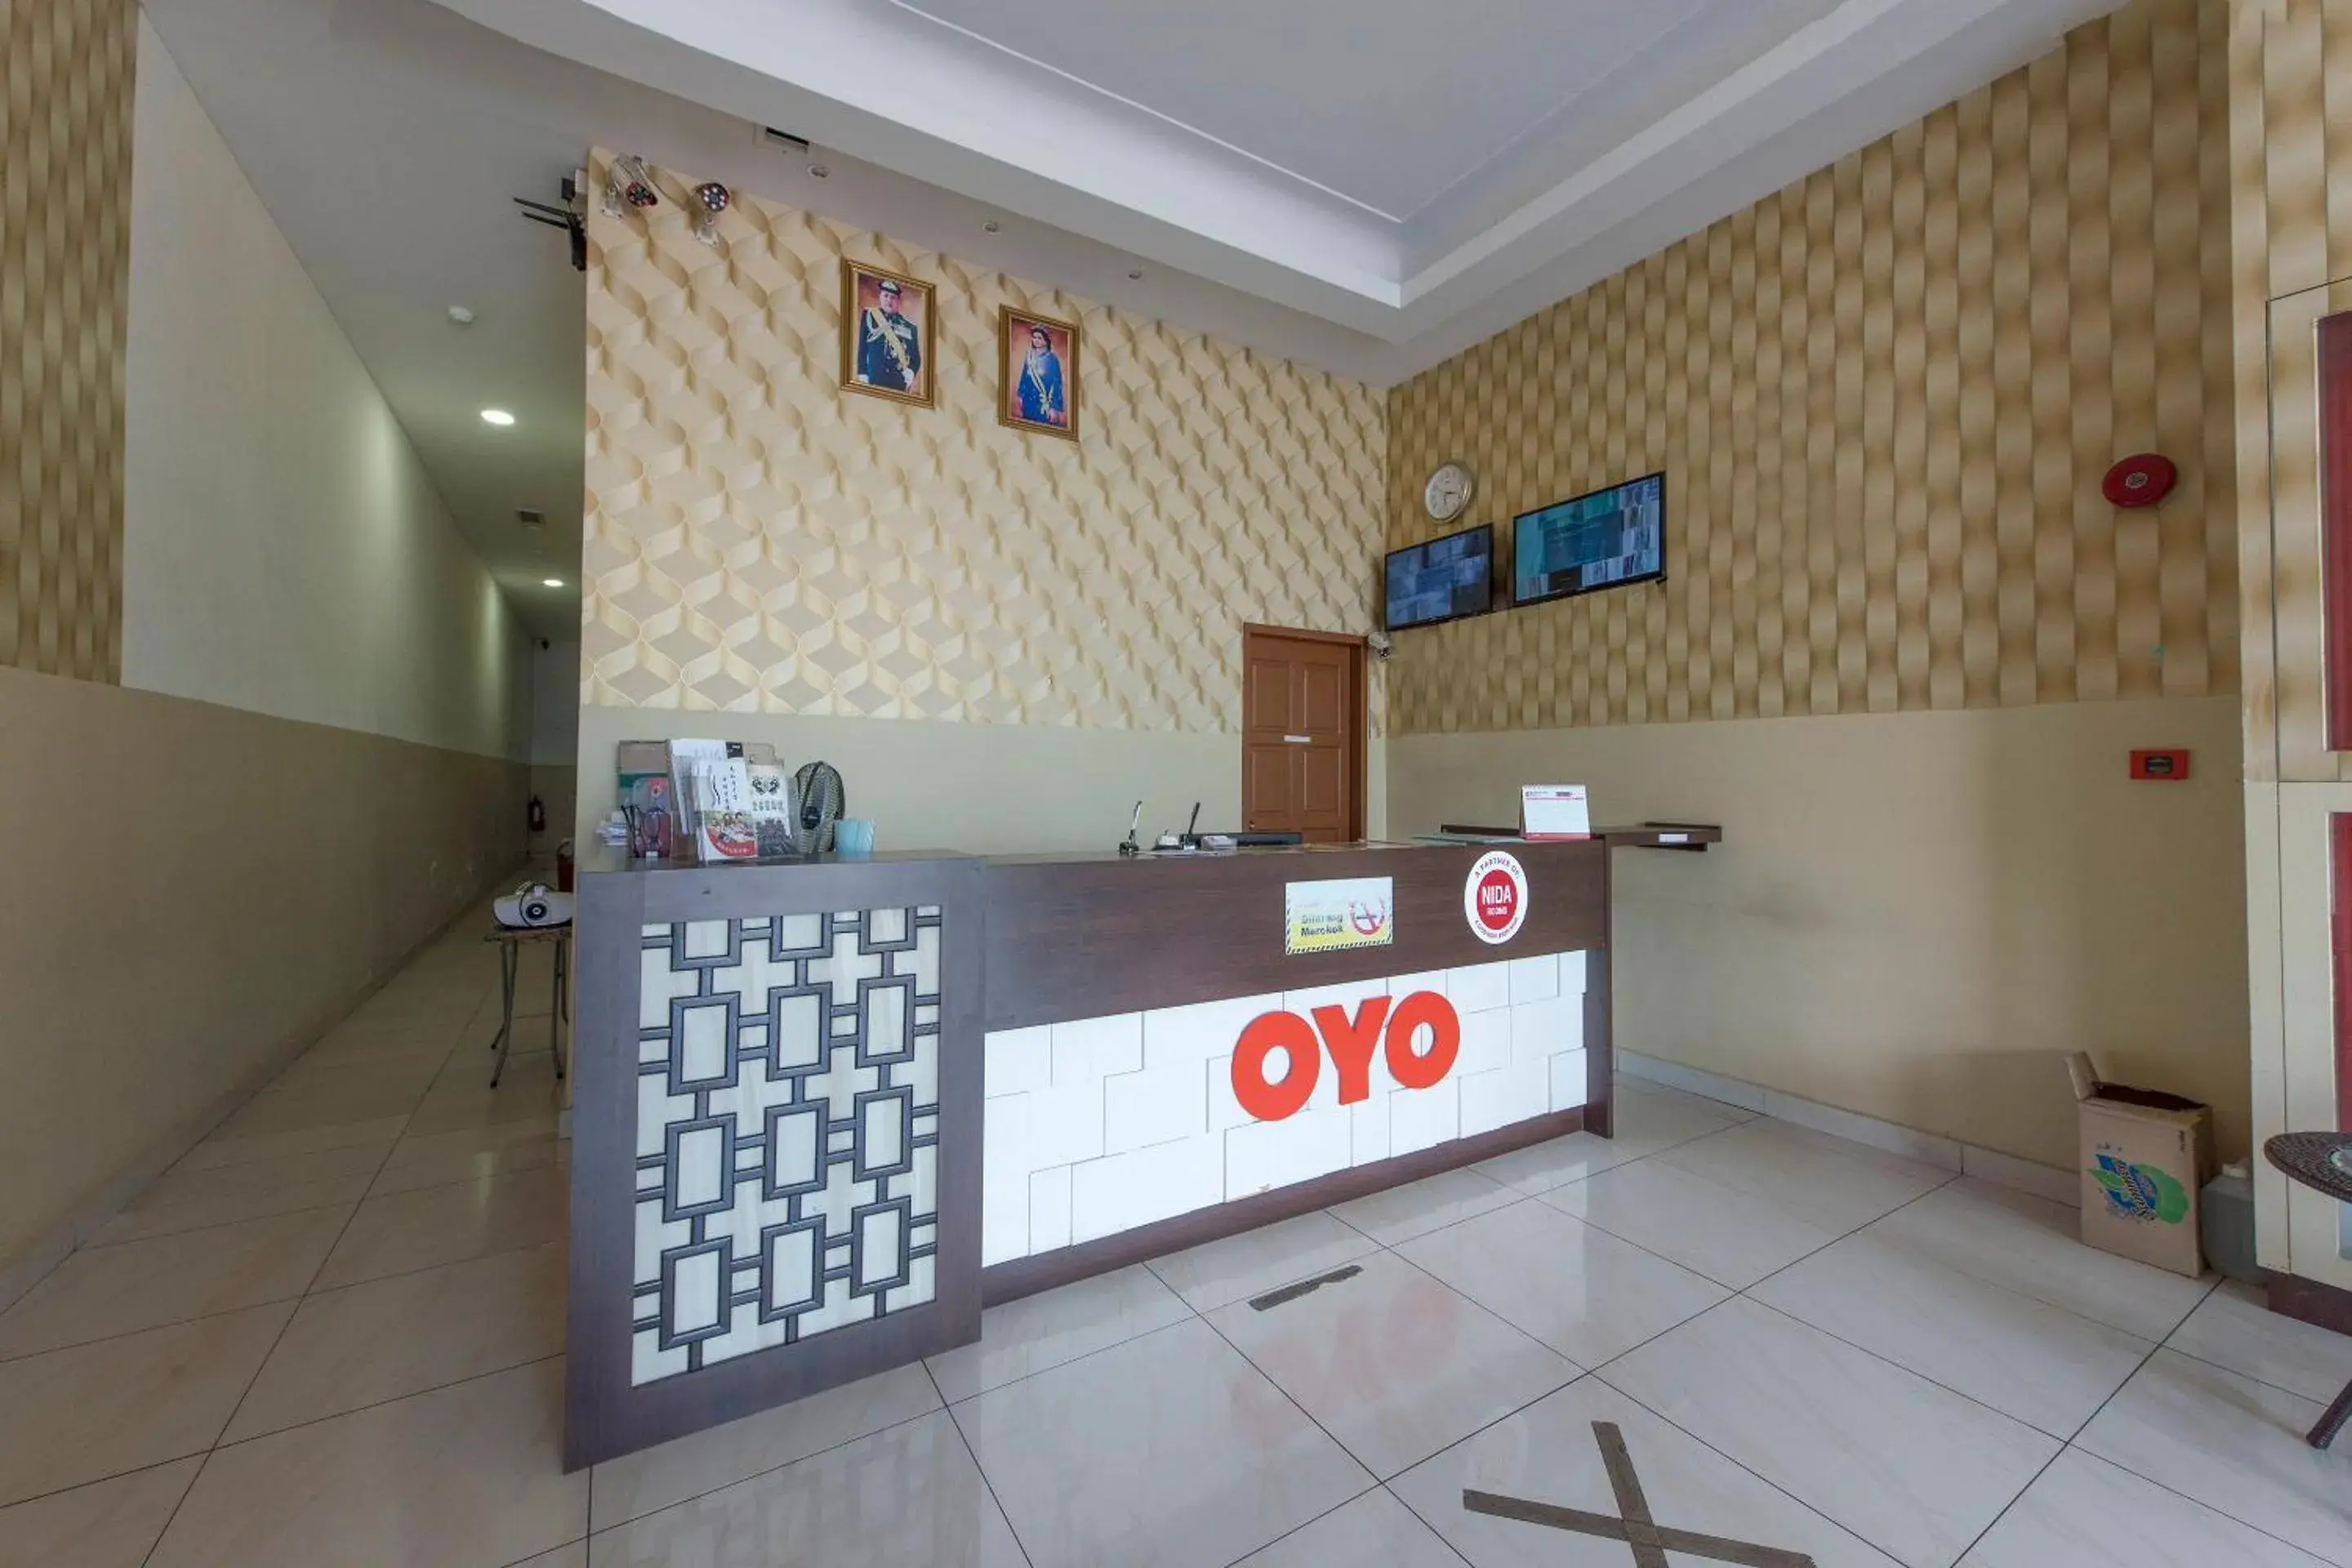 Lobby or reception, Lobby/Reception in OYO 90385 H3 Hotel